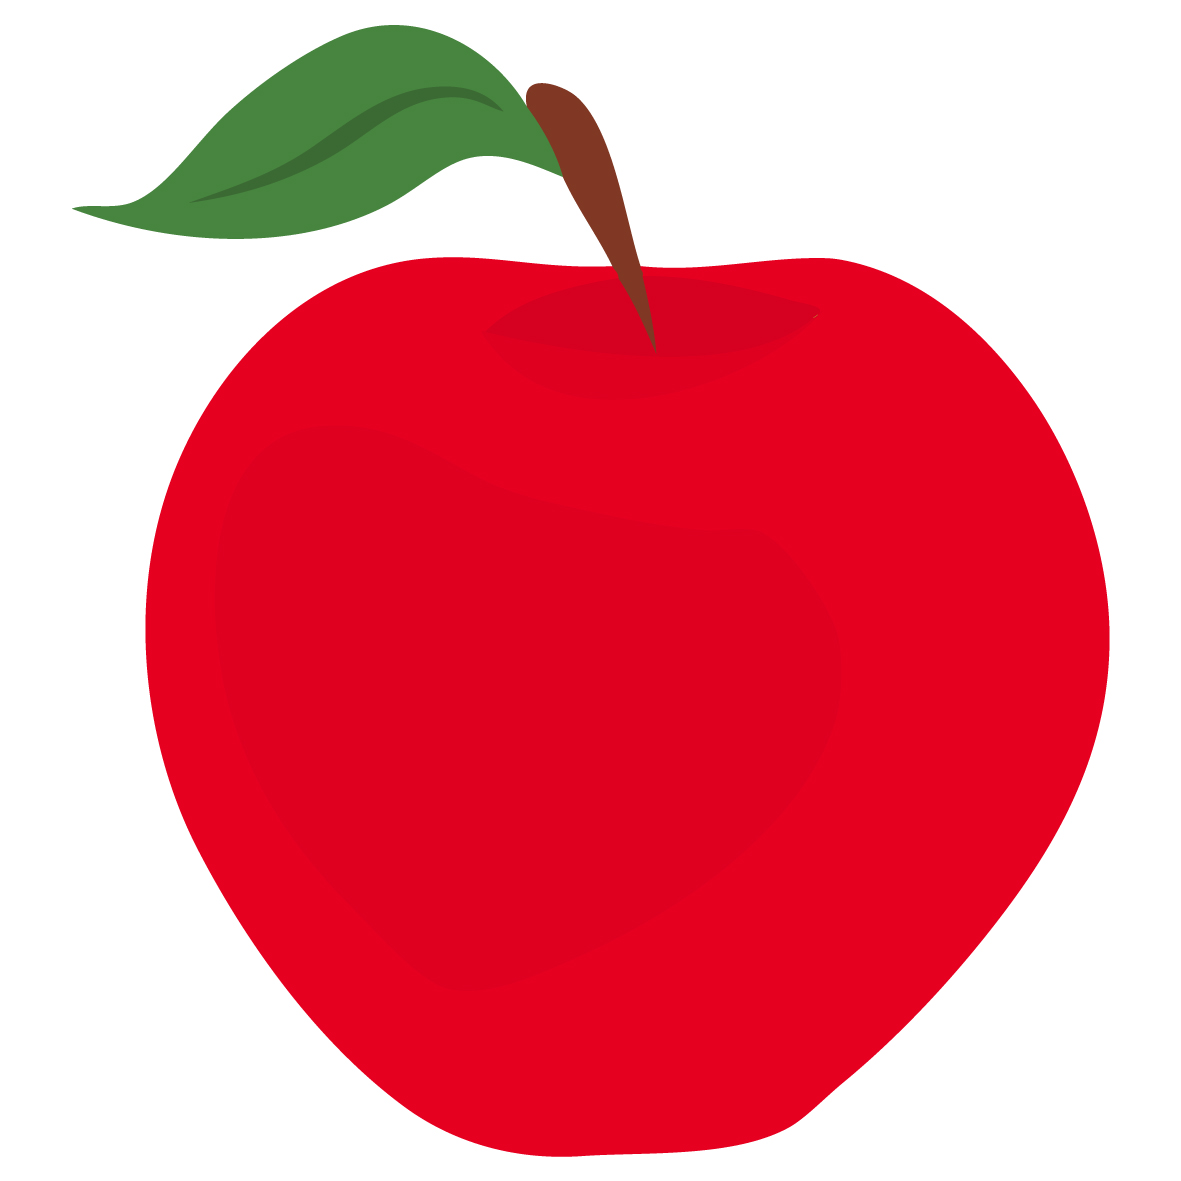 Red Apple Clip Art - Tumundografico